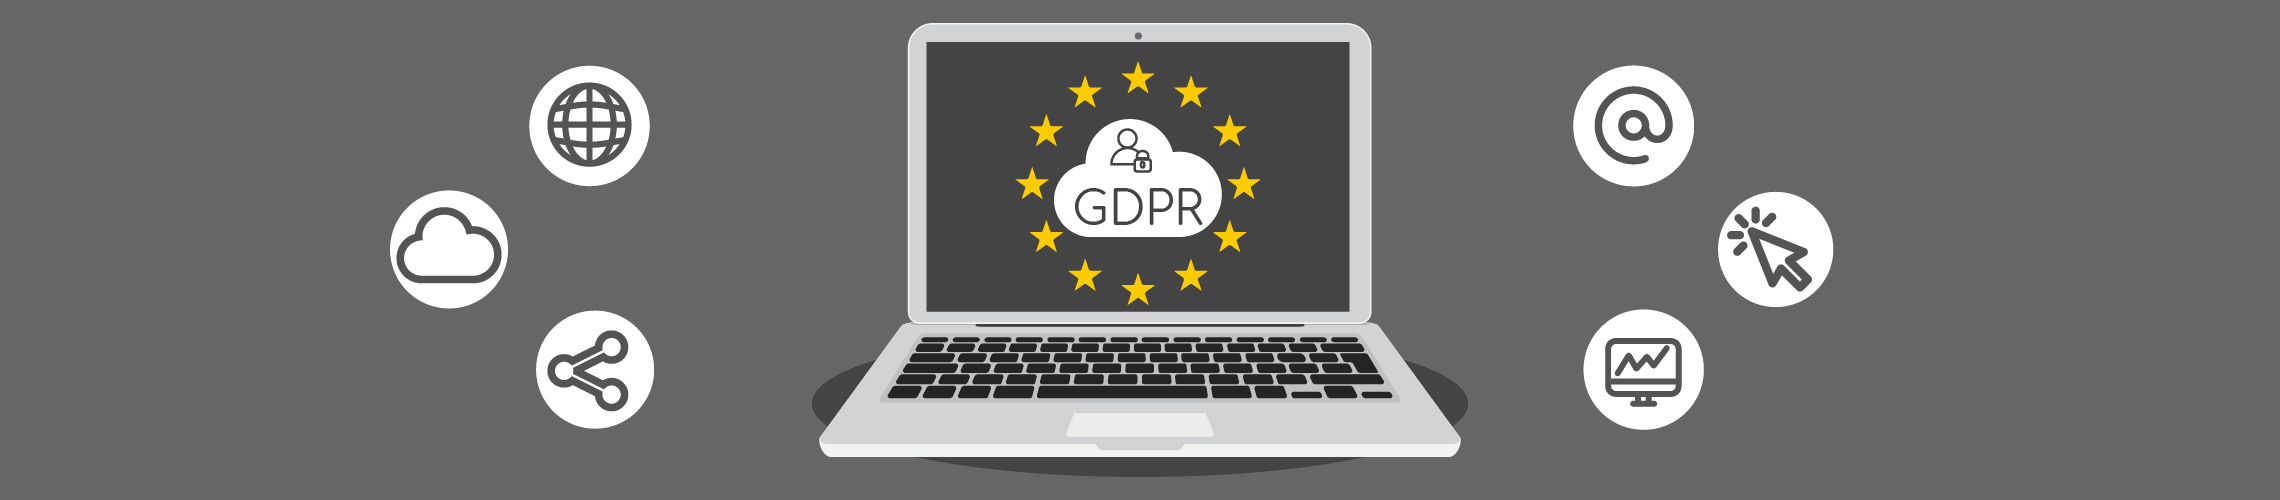 O que é o GDPR? Como afecta a minha empresa? Conheça o Regulamento Geral de Proteção de Dados